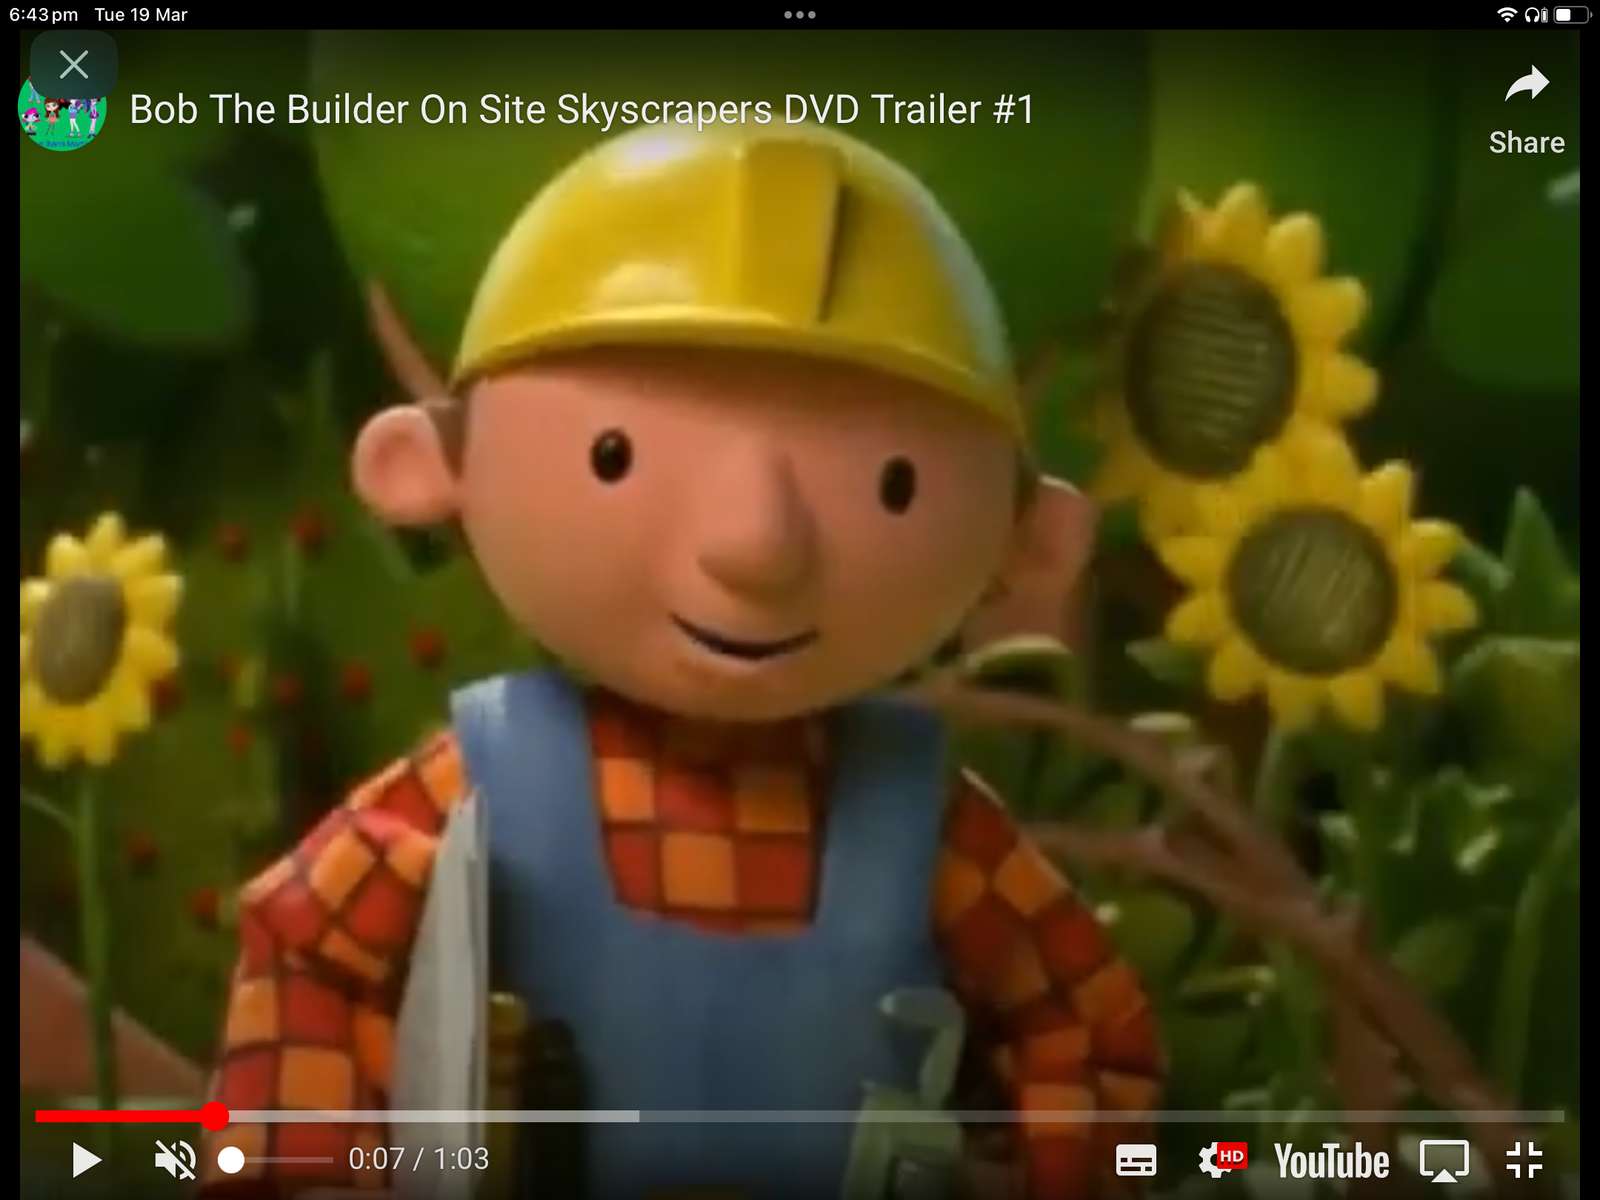 Bob el Constructor en el sitio Skycracpers DVD Trailer rompecabezas en línea